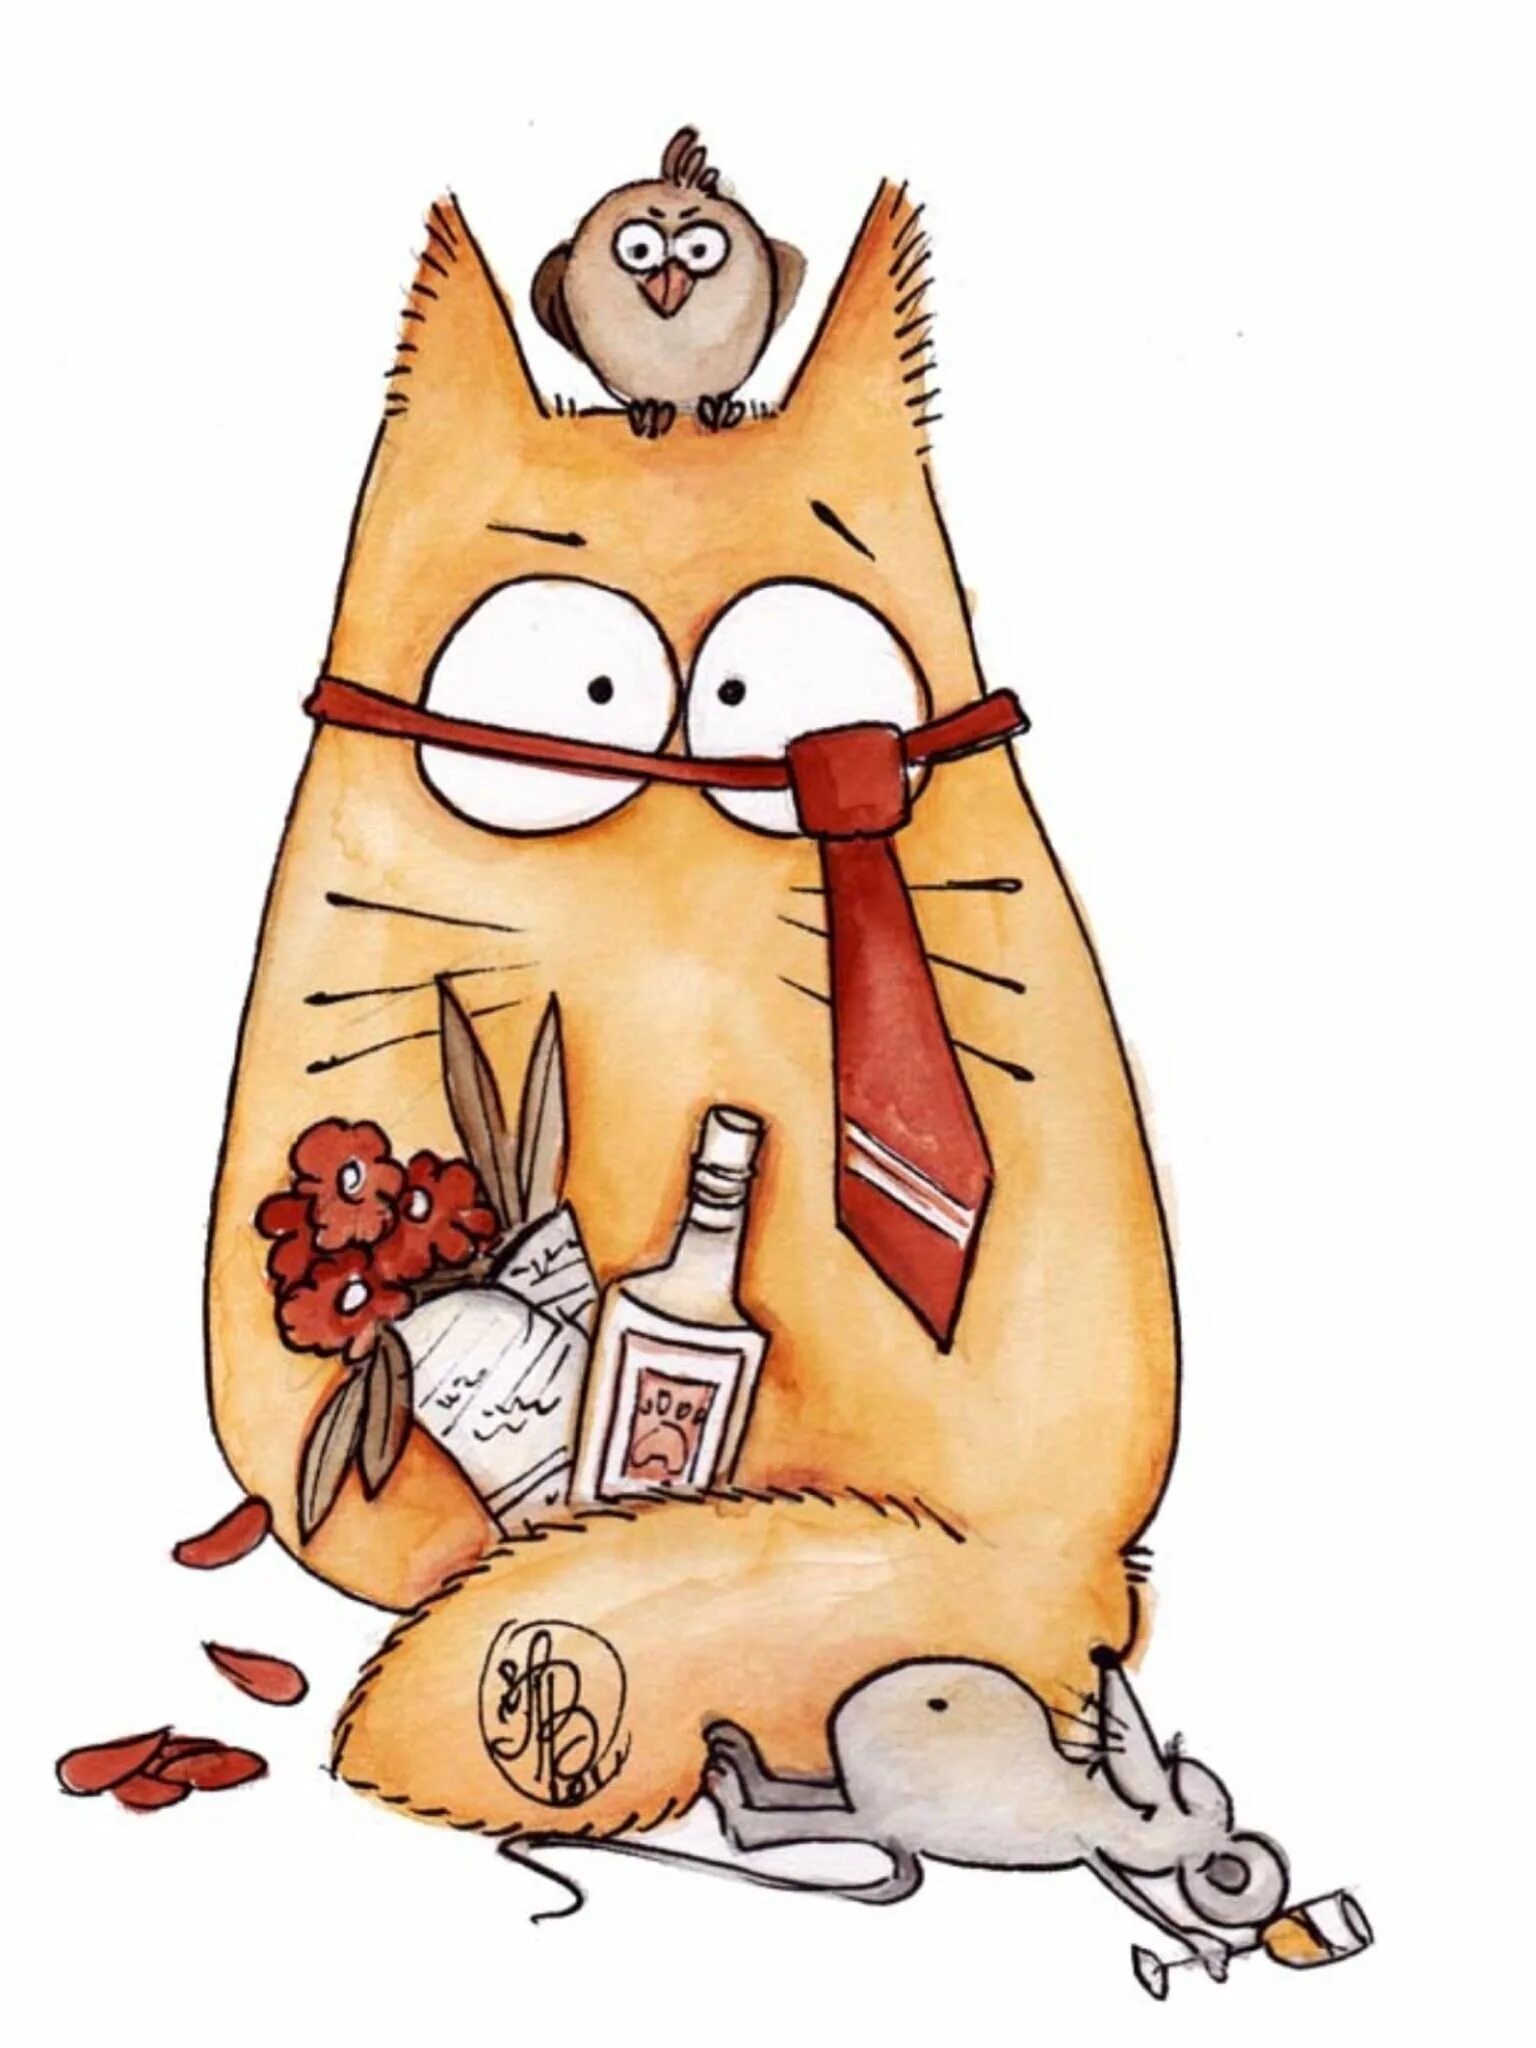 Смешные открытки с котом. Котики Maria van Bruggen. Смешные коты Марии Ван Брюгген. Рисованные коты Марии Ван Брюгген.